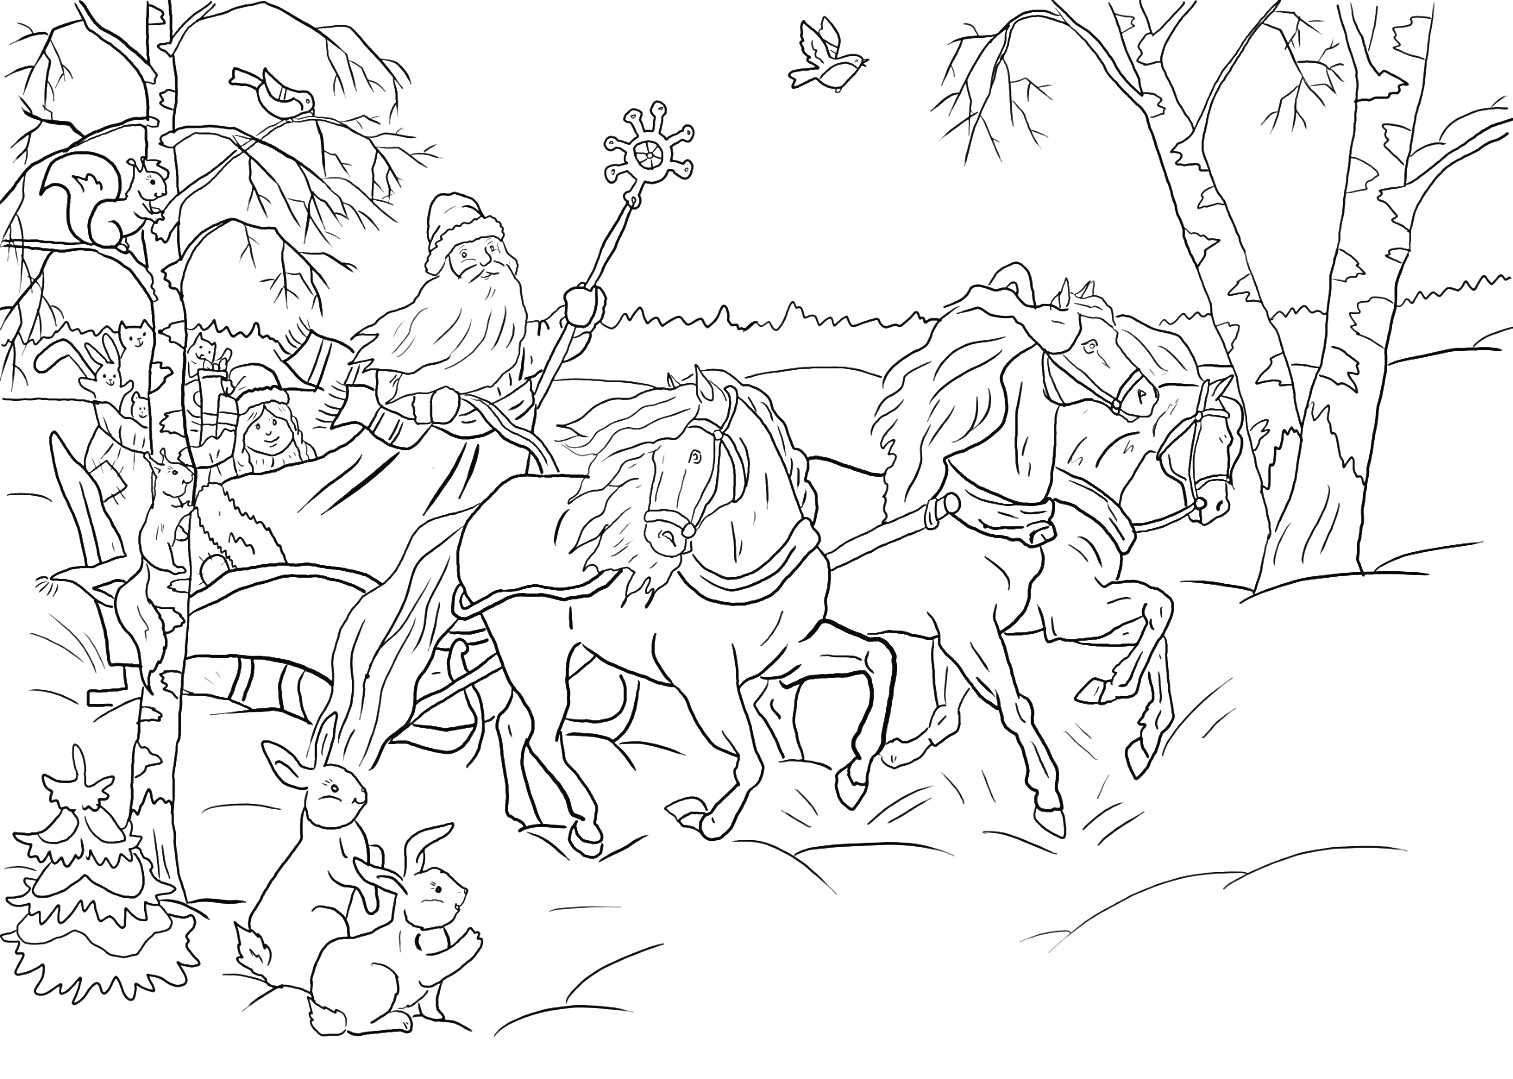 Раскраска Санта на троечной упряжке с лошадьми в зимнем лесу, рядом с зайцами и птицами